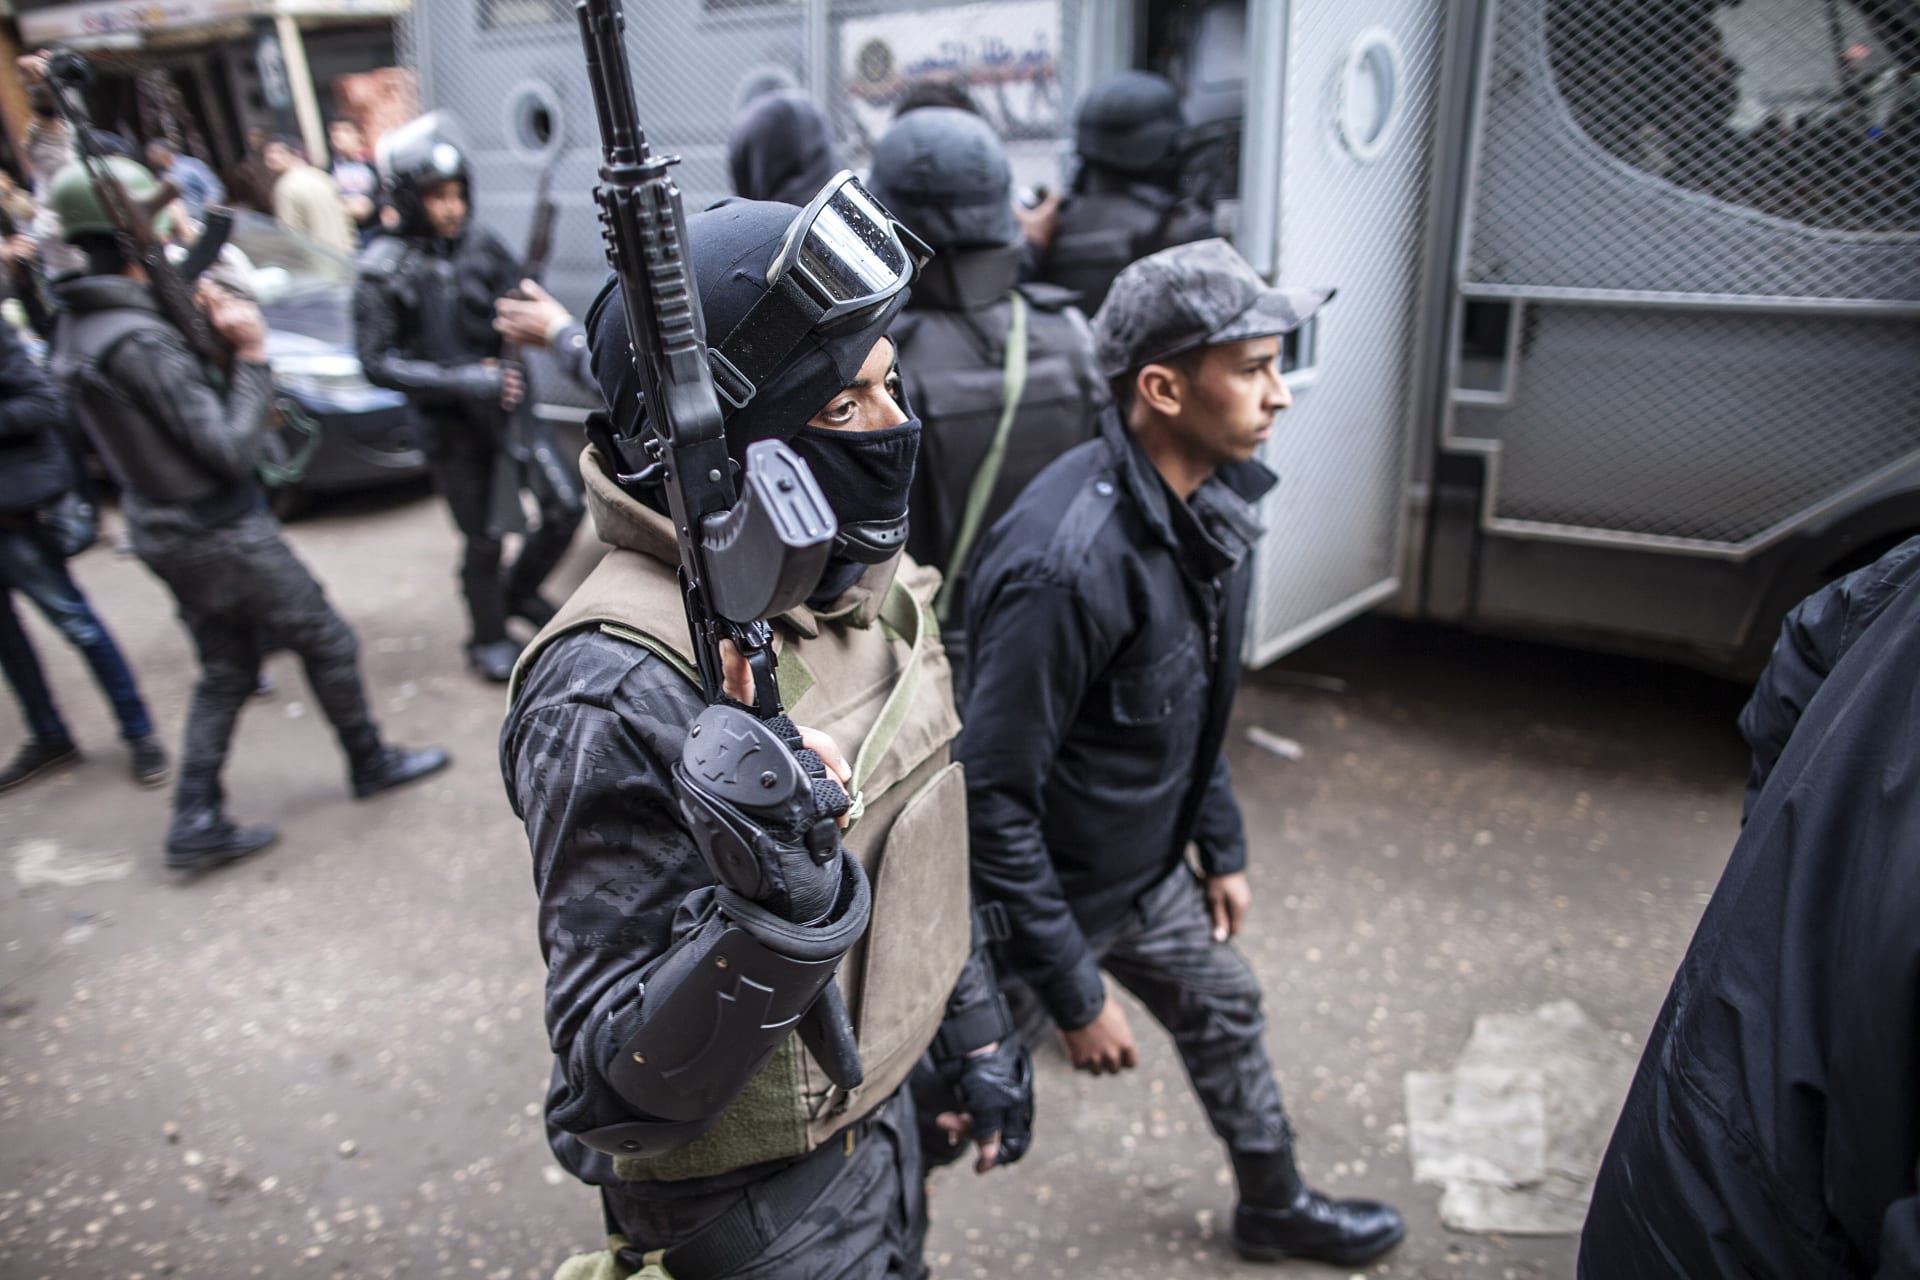 مصر: مقتل 8 ضباط أمن بملابس مدنية.. وداعش يتبنى المسؤولية: "وحدة أمن جنود الخلافة" نفذت الهجوم